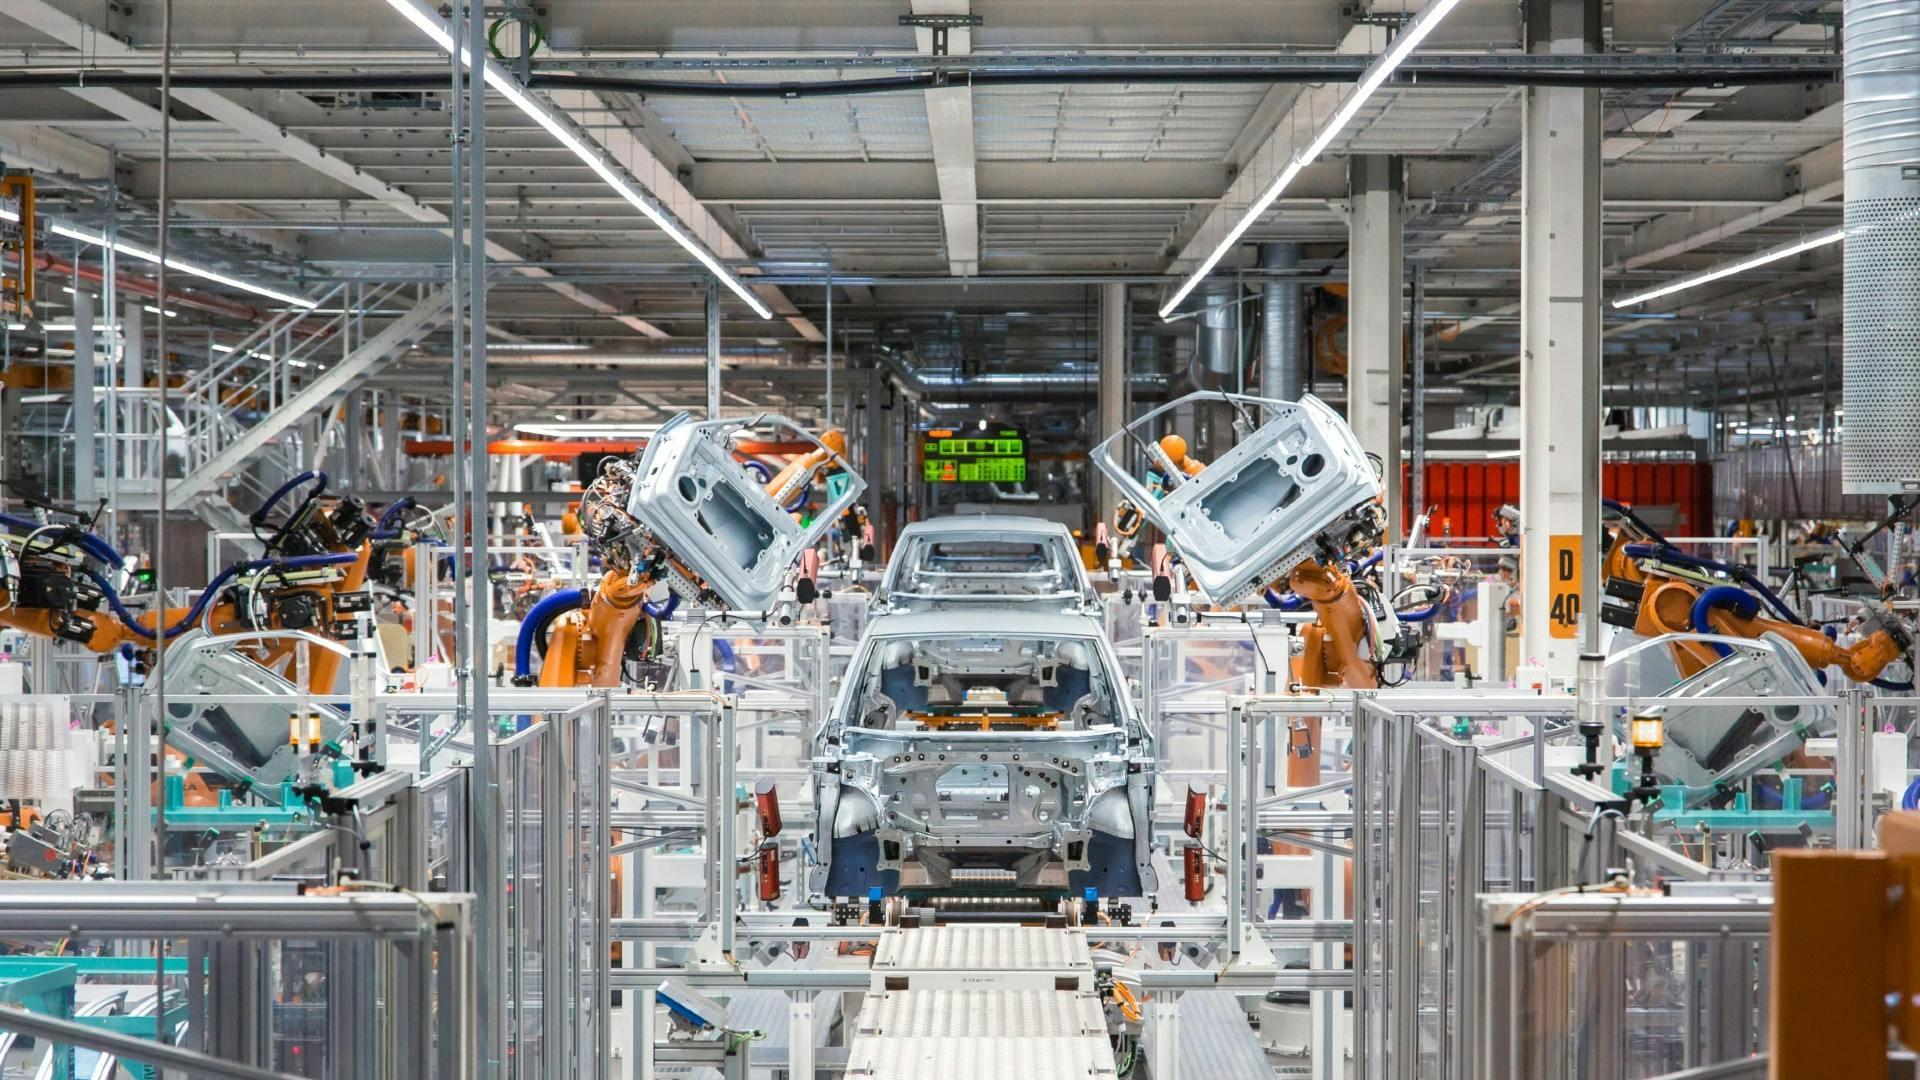 Évolution rapide de l'usine pour l'industrie automobile : bénéficiez d'une meilleure visibilité sur vos processus de production en modernisant vos équipements existants grâce à des technologies intelligentes